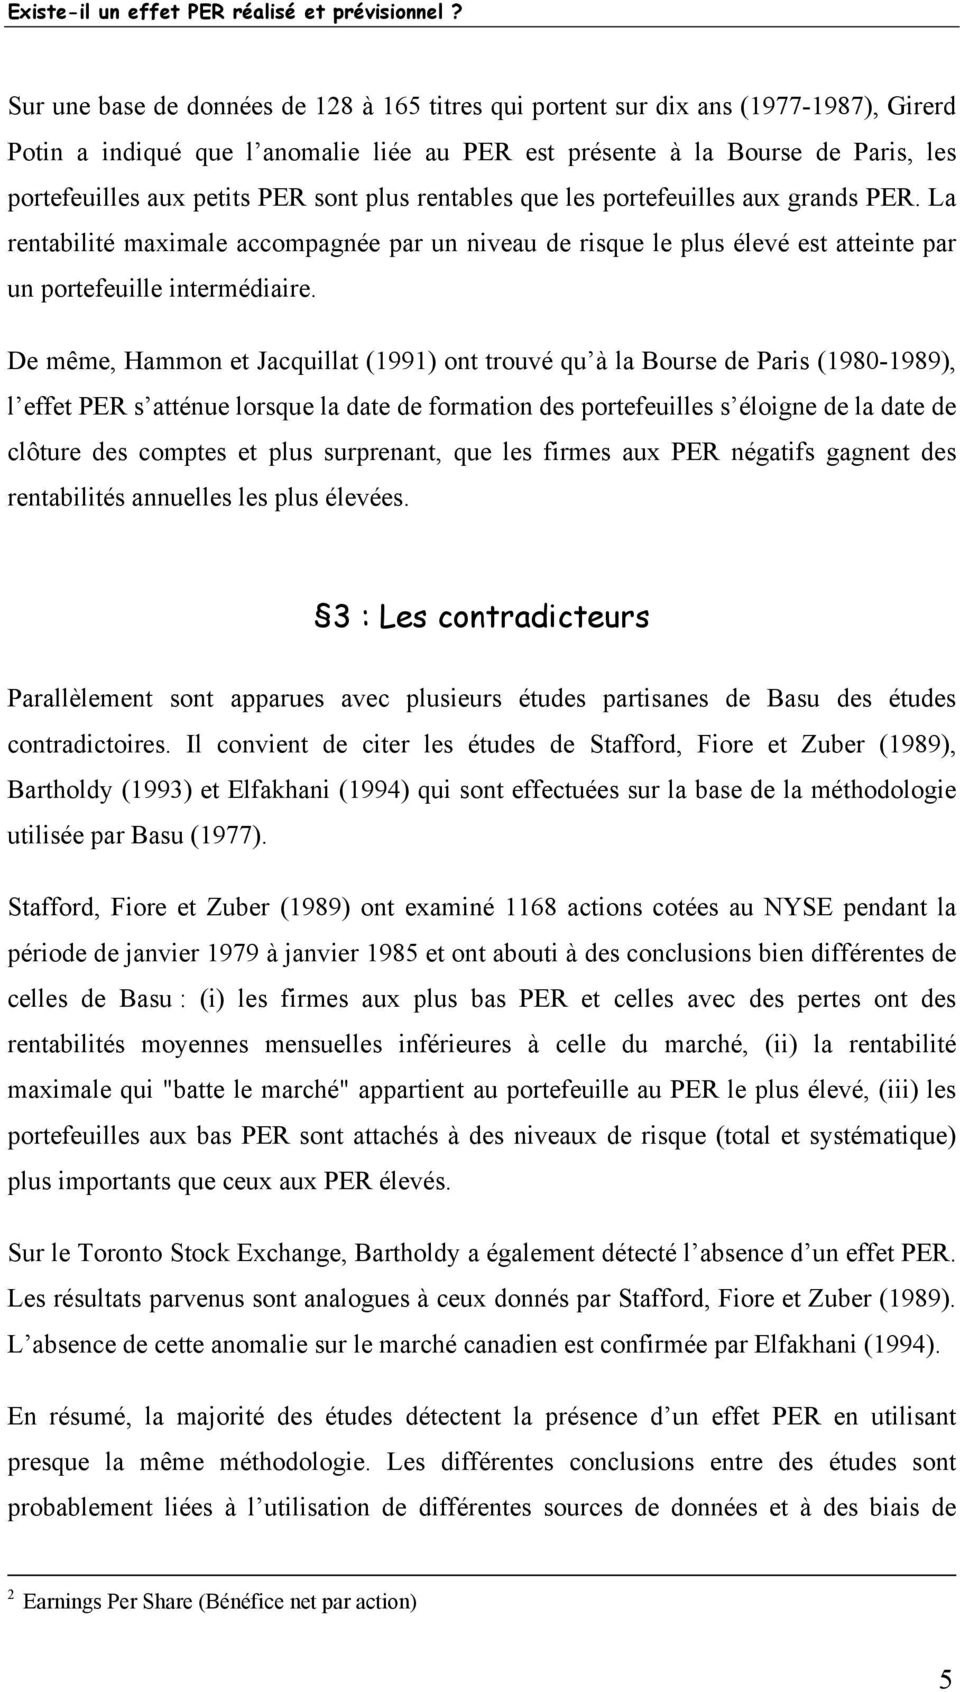 De même, Hammon et Jacquillat (99) ont trouvé qu à la Bourse de Paris (980-989), l effet PER s atténue lorsque la date de formation des portefeuilles s éloigne de la date de clôture des comptes et